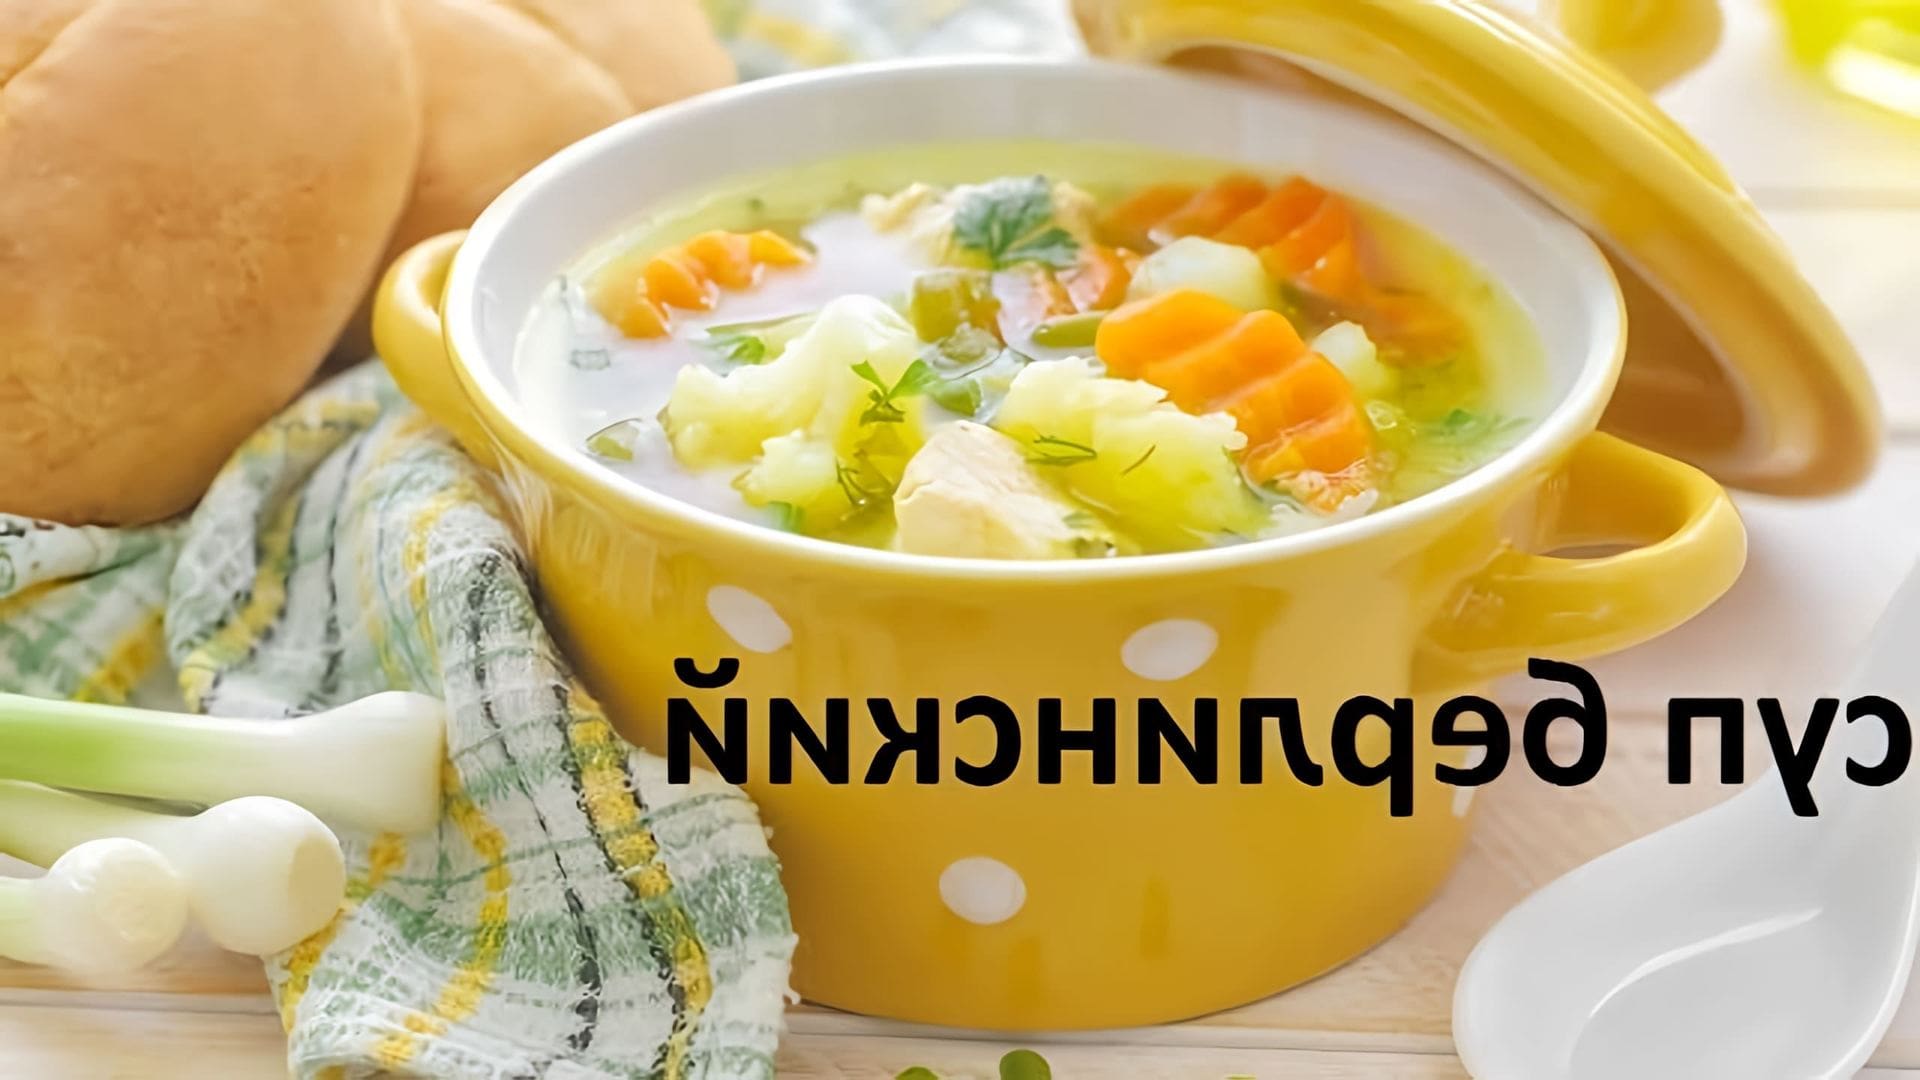 В этом видео показано, как приготовить суп "Берлинский" с цветной капустой, грибами и другими овощами